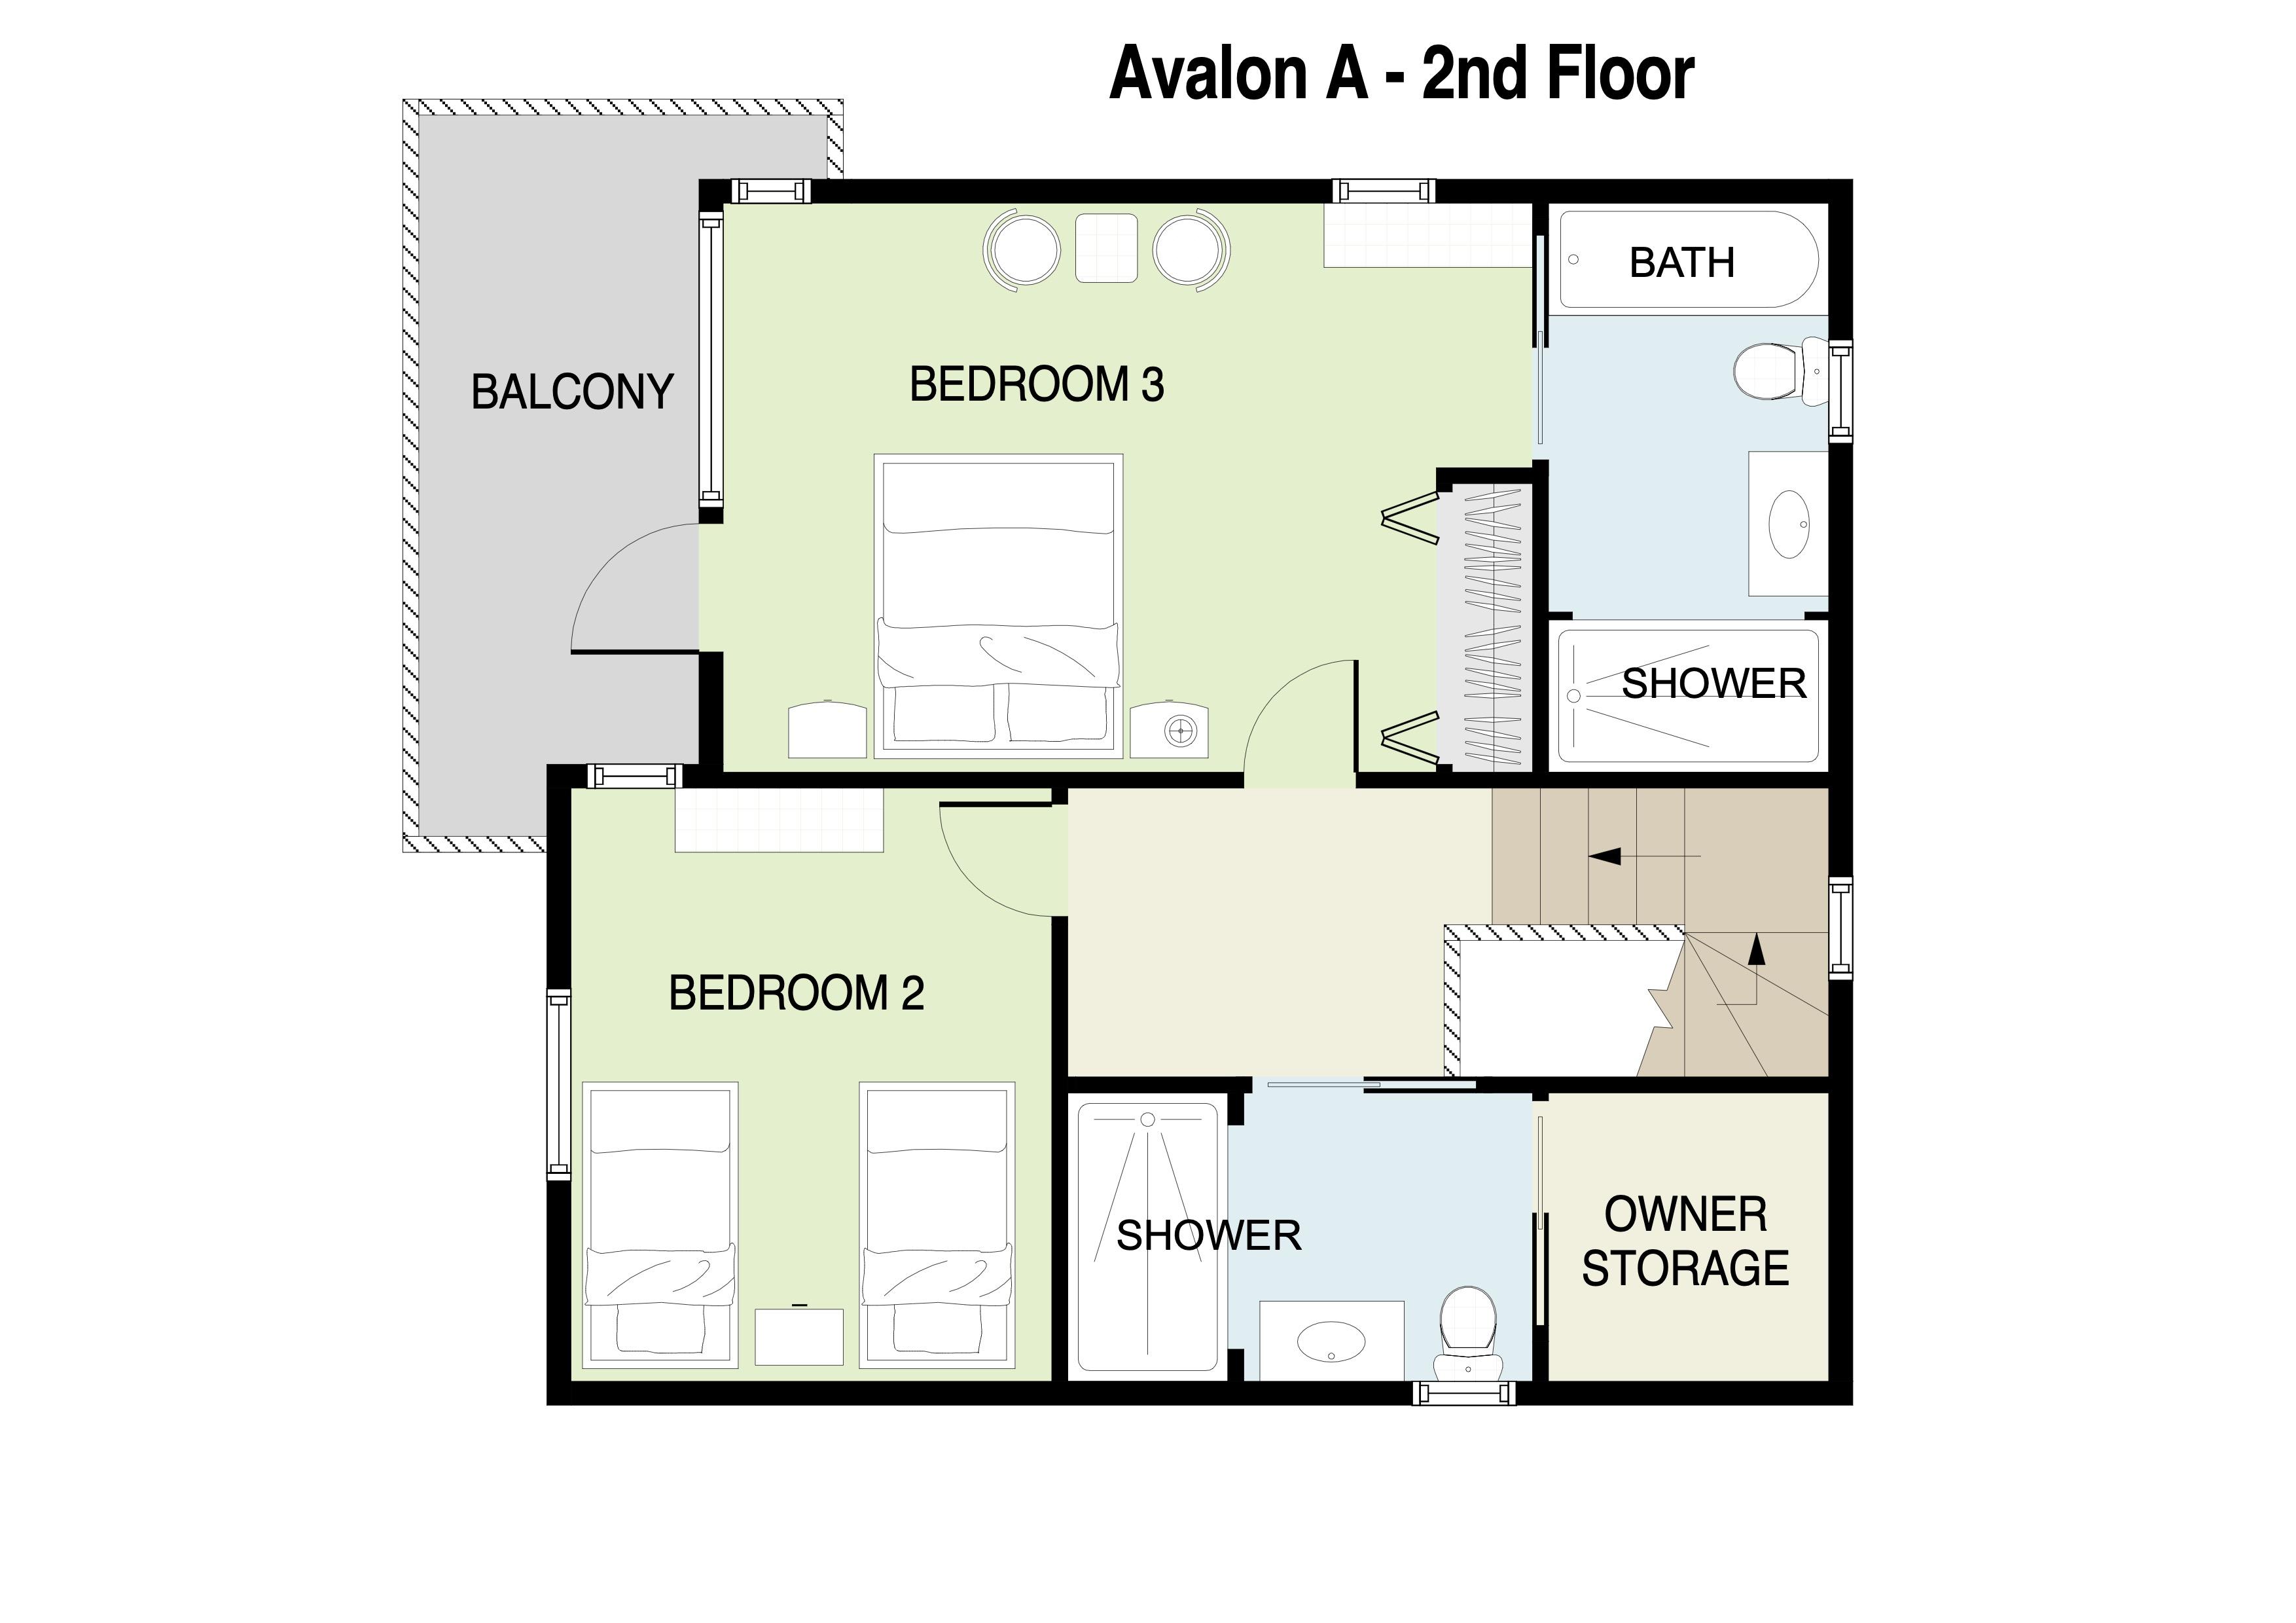 Avalon A 2nd floor plans